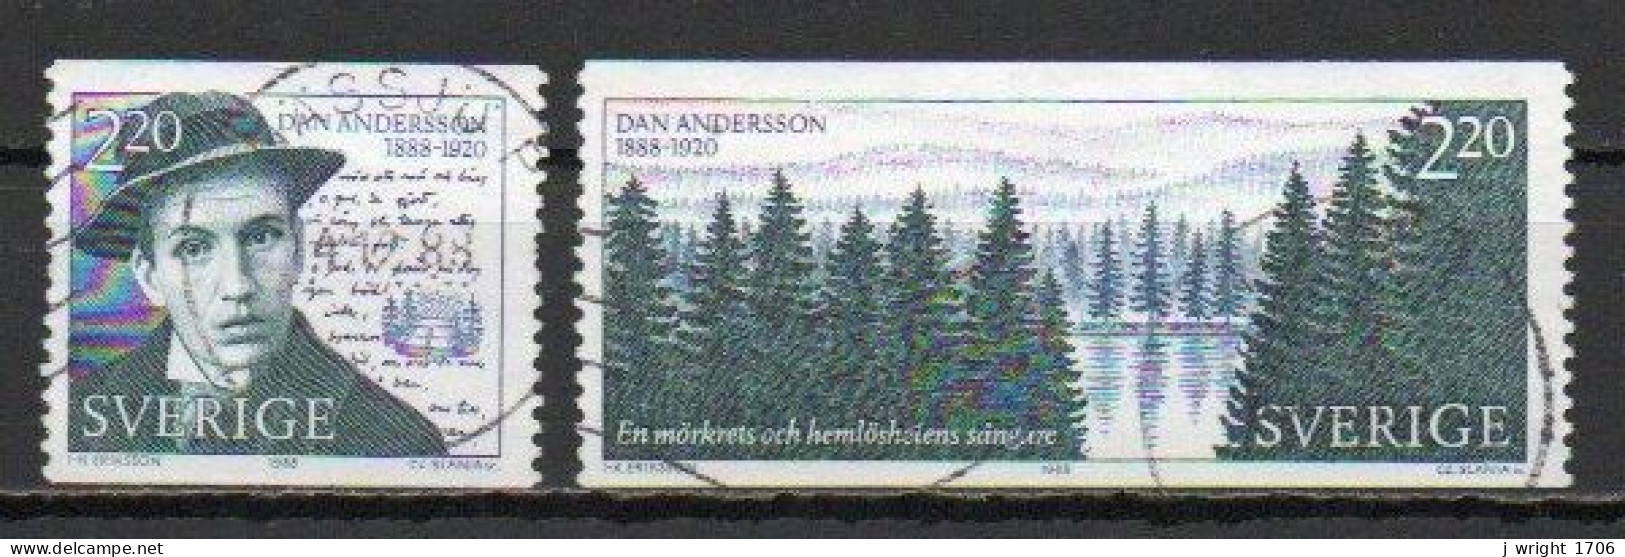 Sweden, 1988, Dan Andersson, Set, USED - Usados